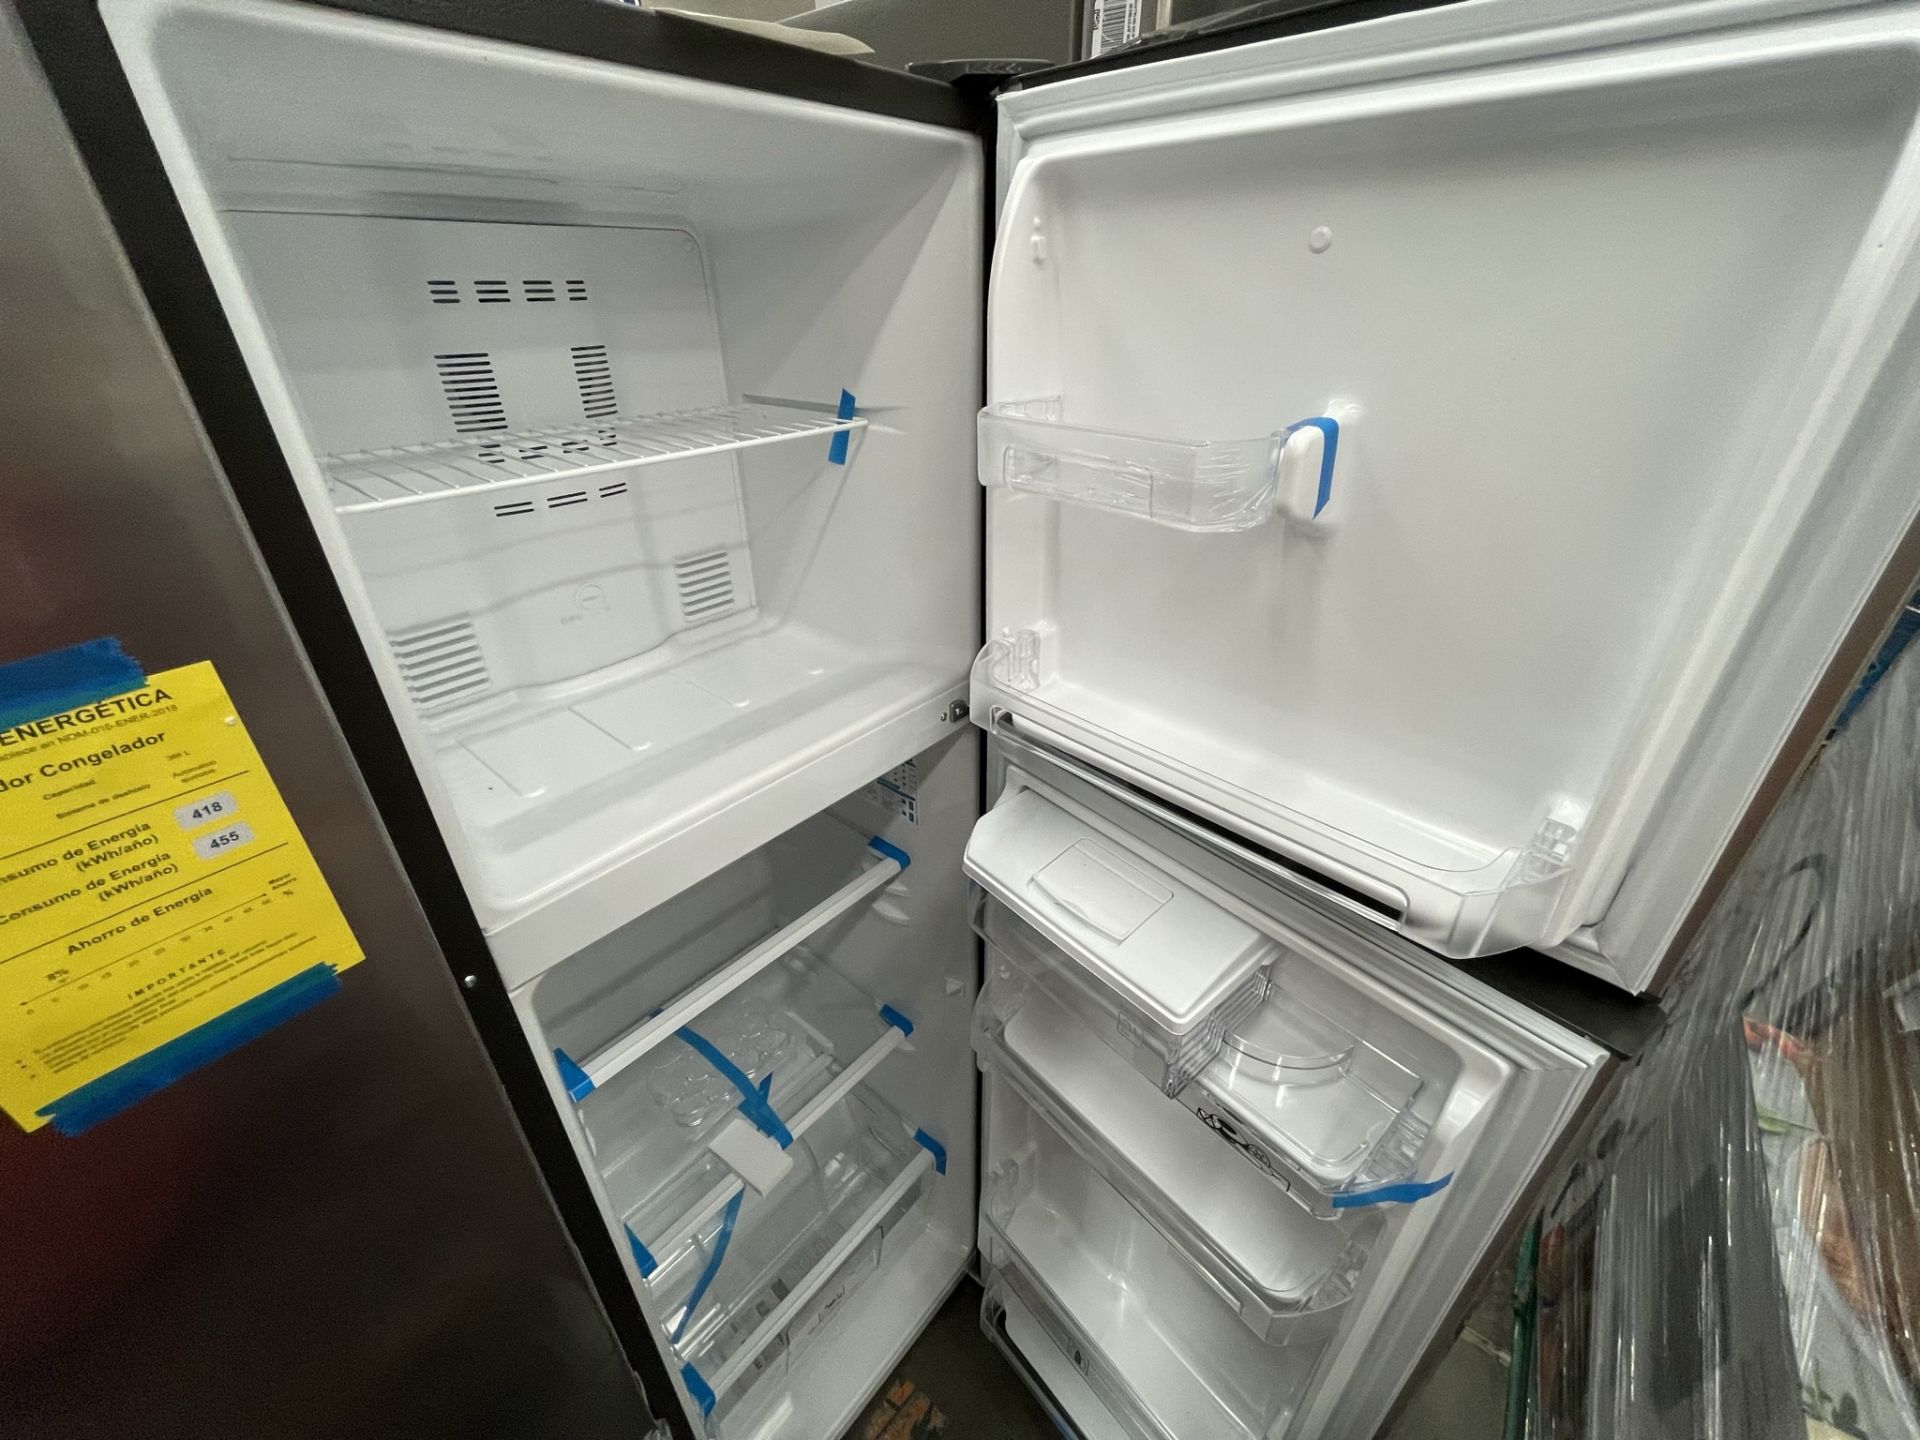 (EQUIPO NUEVO) 1 Refrigerador Con Dispensador De Agua Marca MABE, Modelo RMA250FYMRSA, Serie 2209B6 - Image 4 of 8